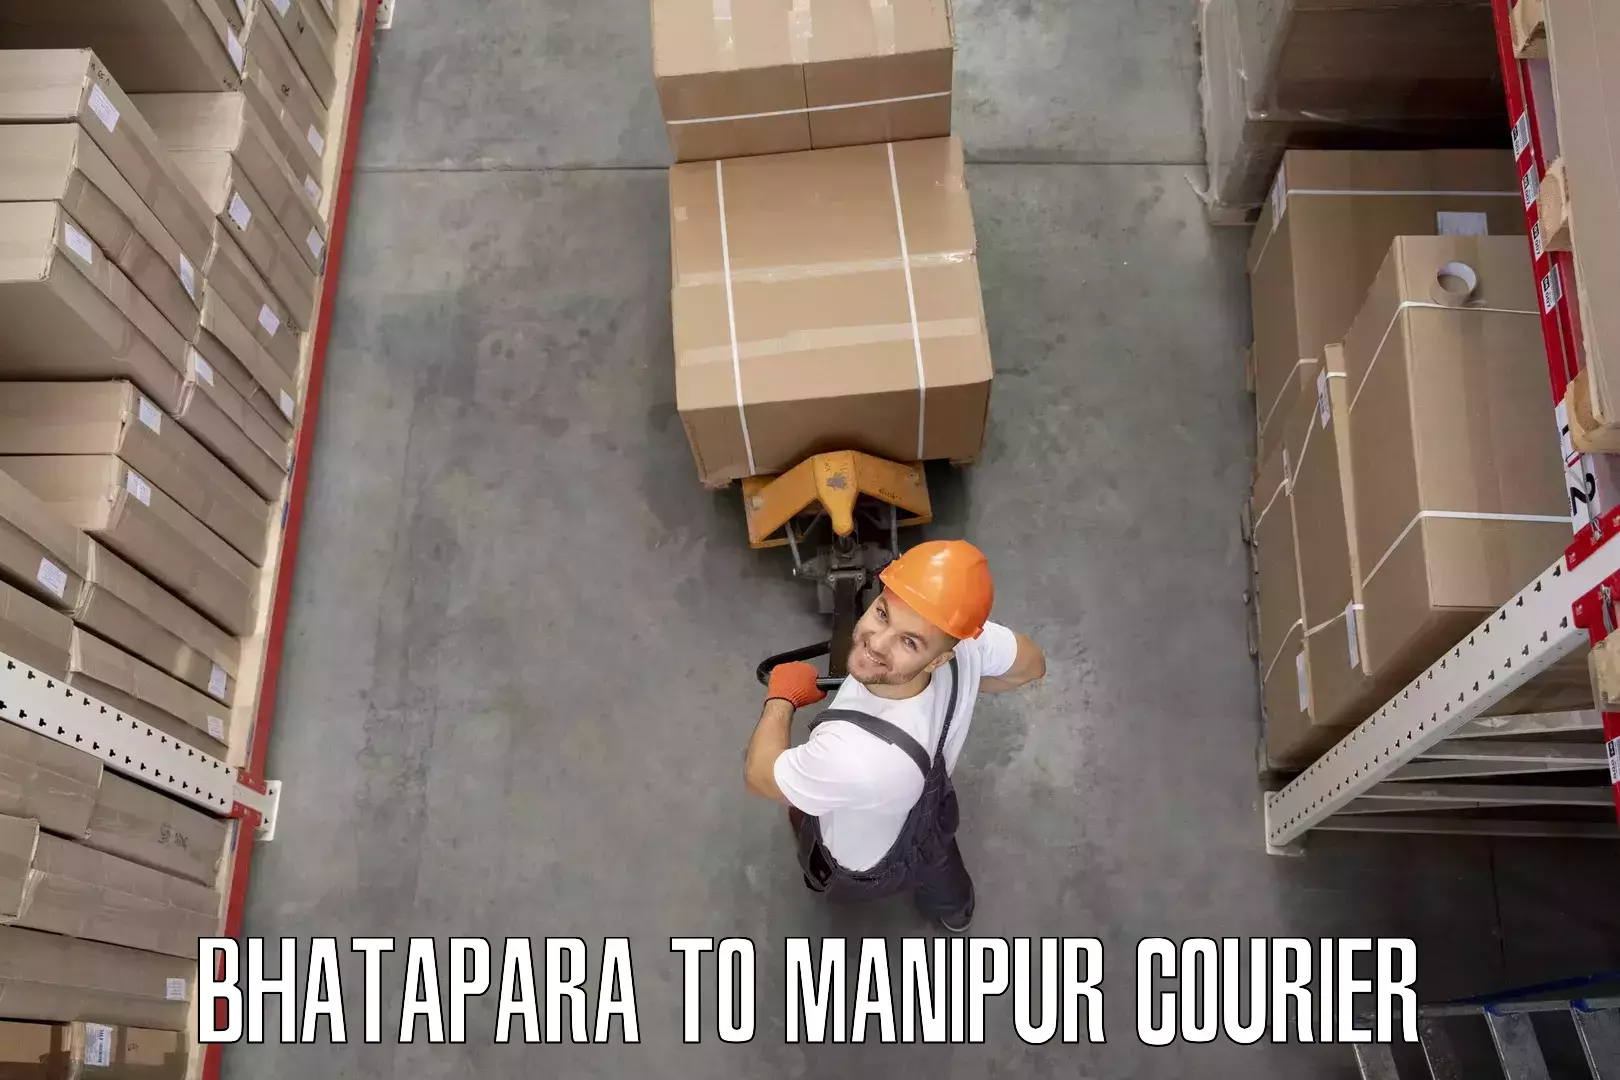 Packing and moving services Bhatapara to Senapati